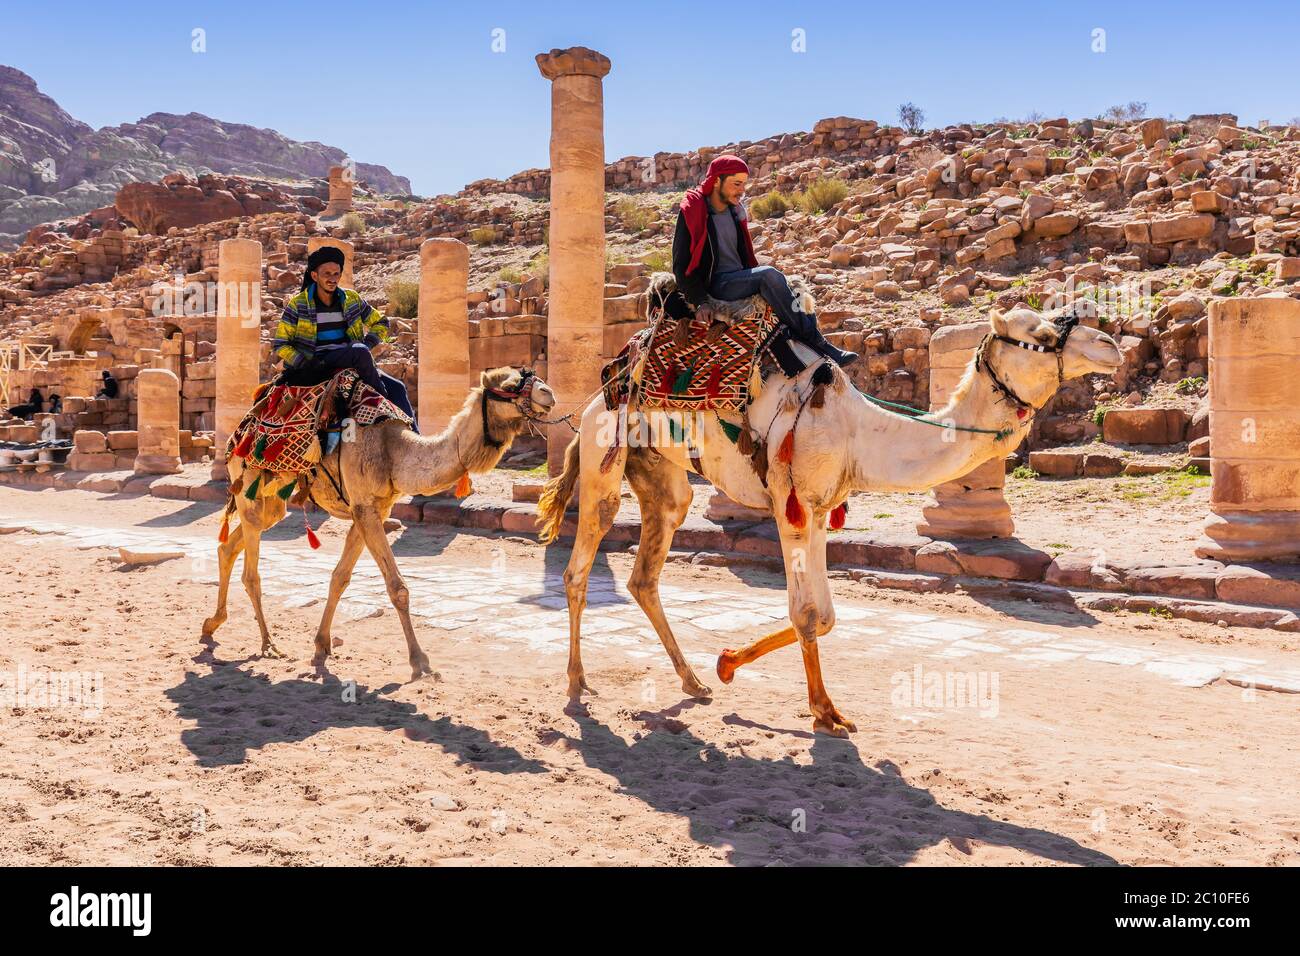 Petra, Jordanien - 4. März 2020: Kamelreiter im Großen Tempel des Nabateischen Königreichs. Stockfoto